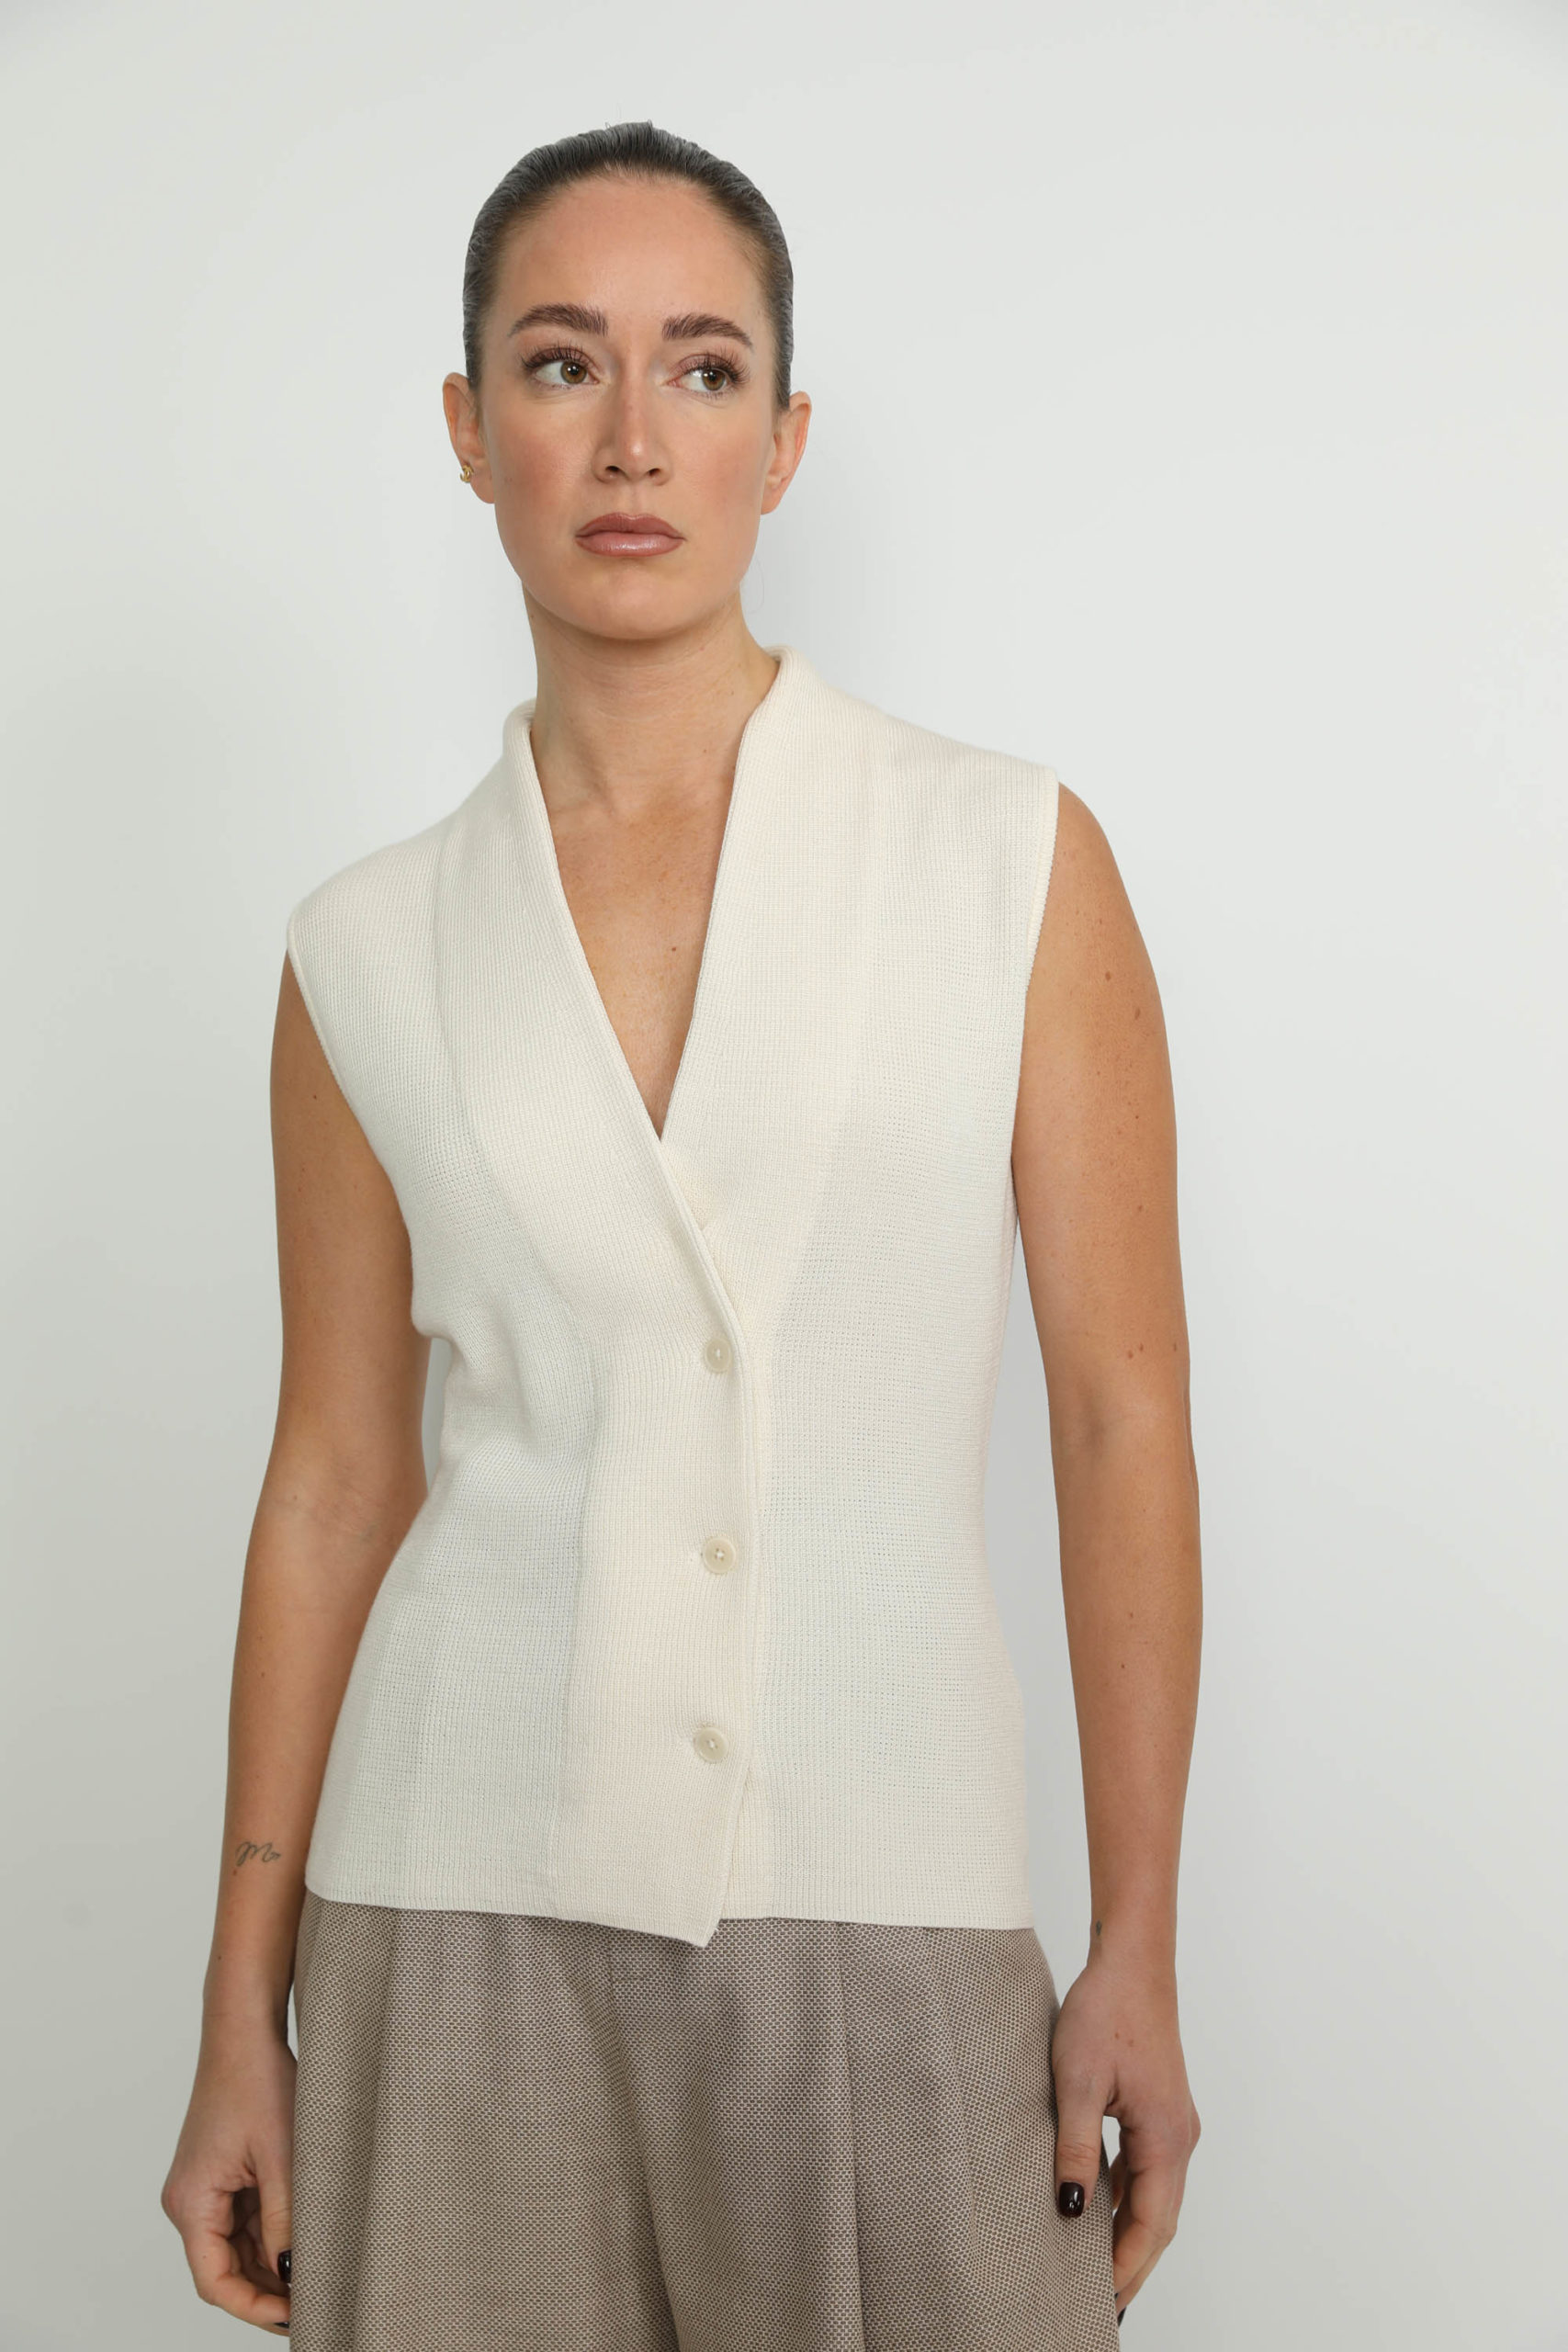 Arbon Waistcoat – Arbon White Knit Waistcoat